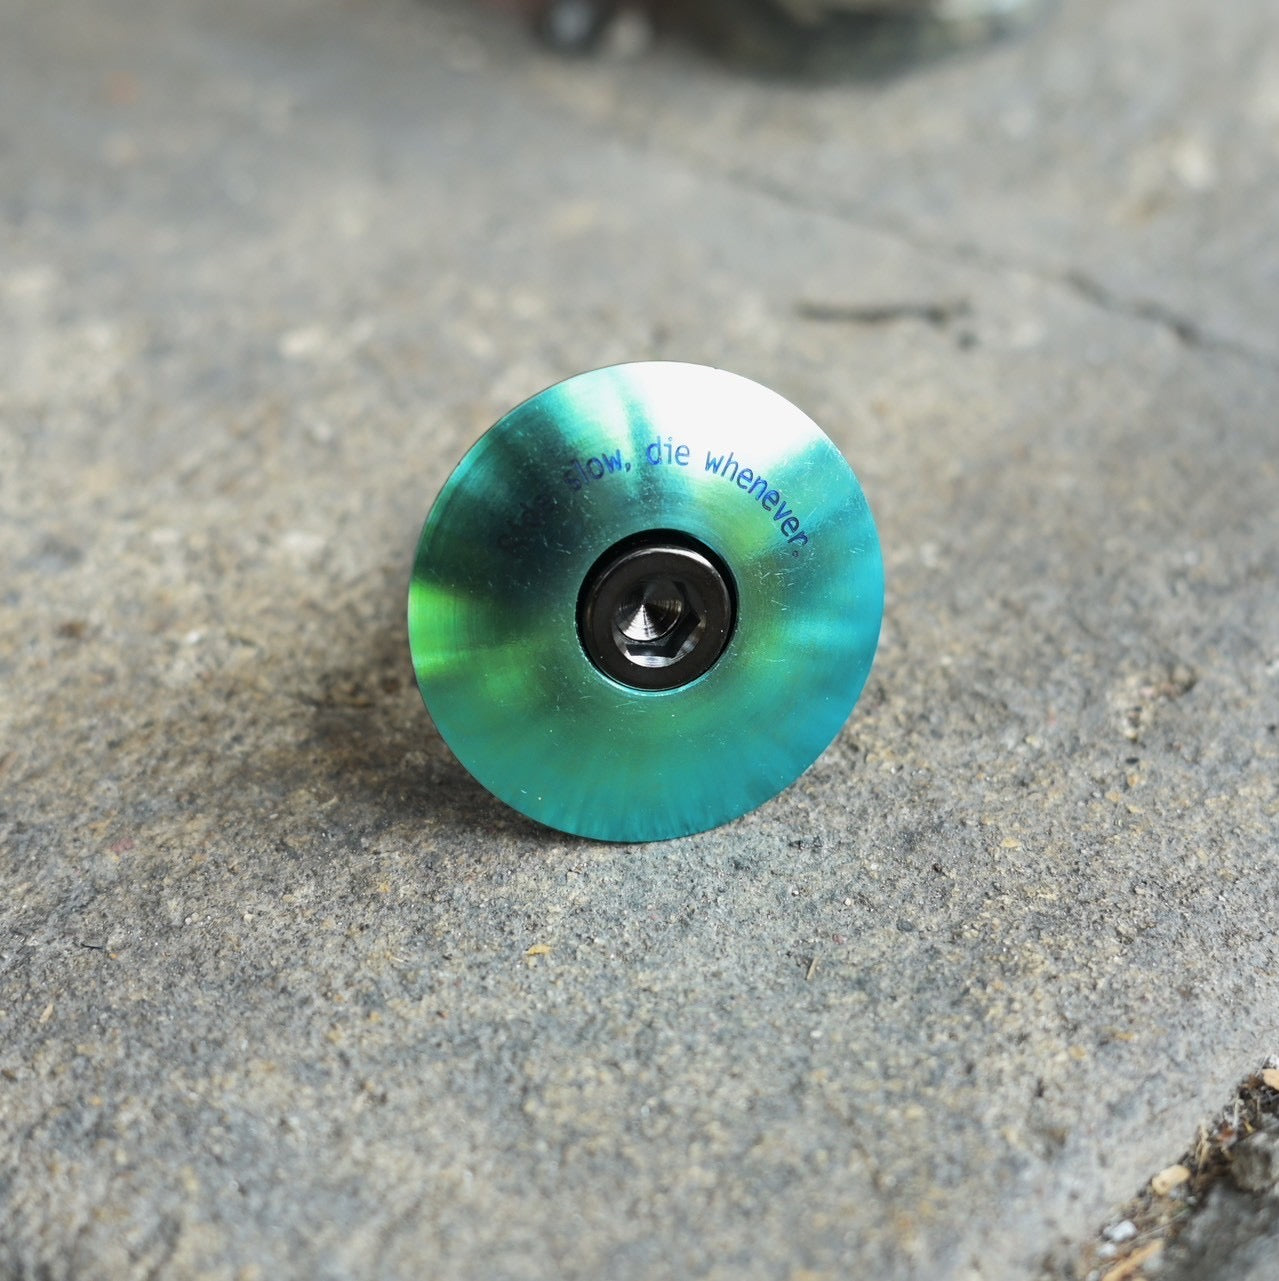 Stridsland - Titanium Top Cap (green/black bolt)